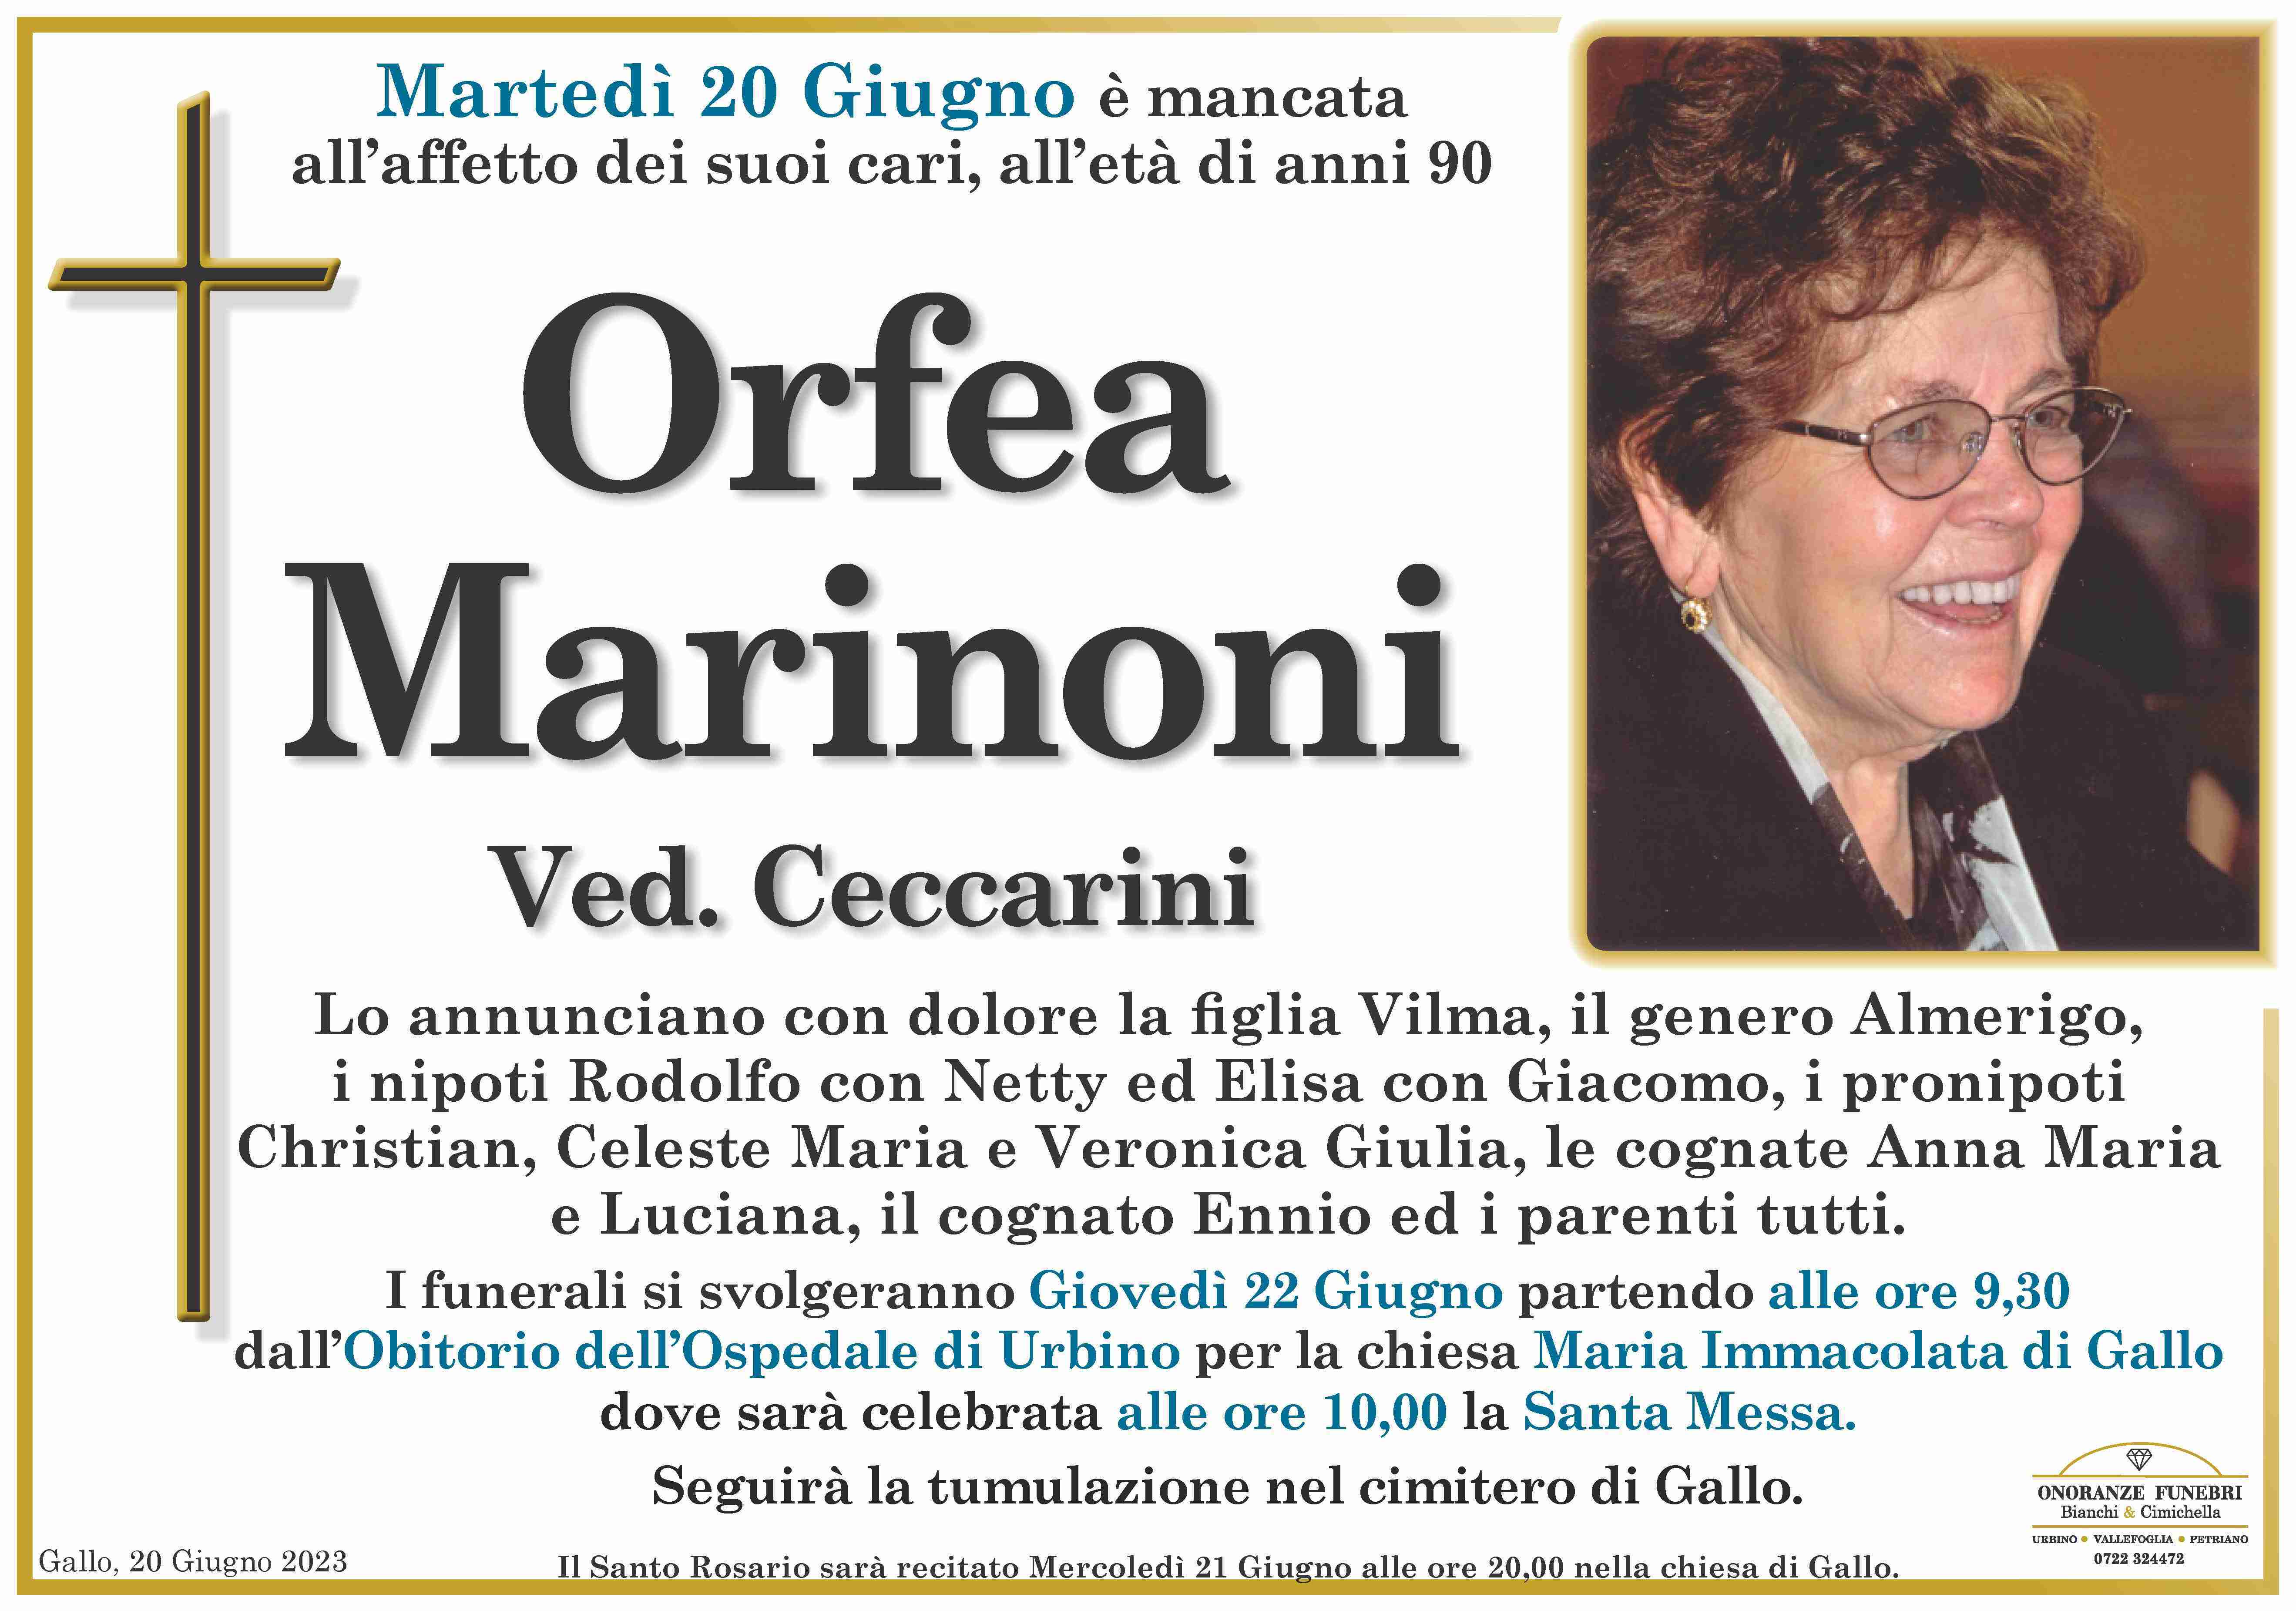 Orfea Marinoni